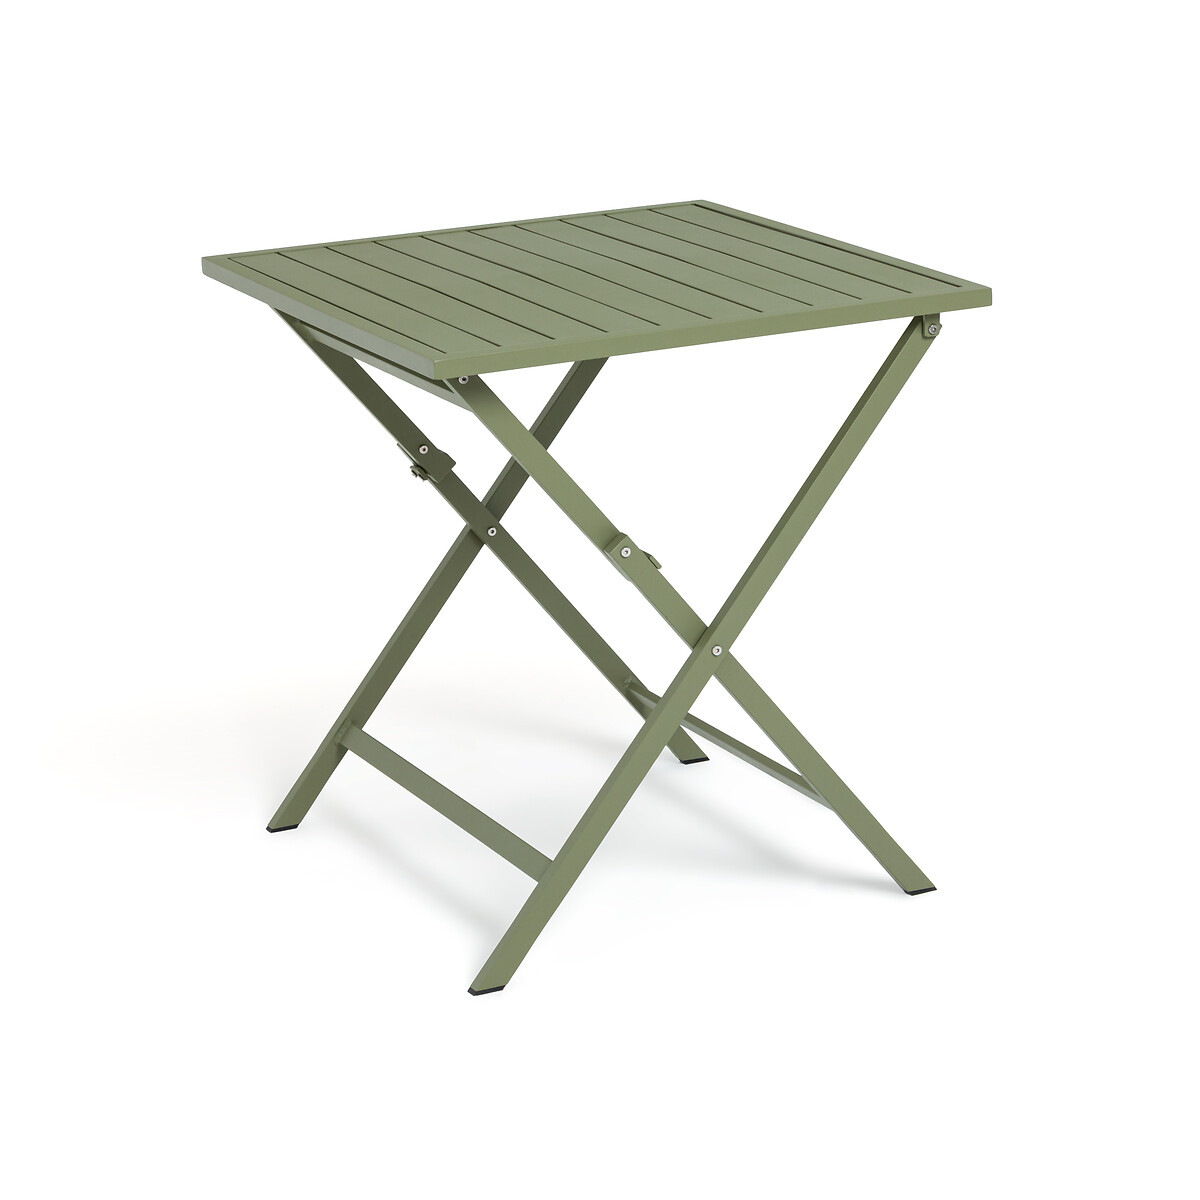 Стол садовый из алюминия Zapy единый размер зеленый стол диванный из сплава алюминия calendes единый размер серый